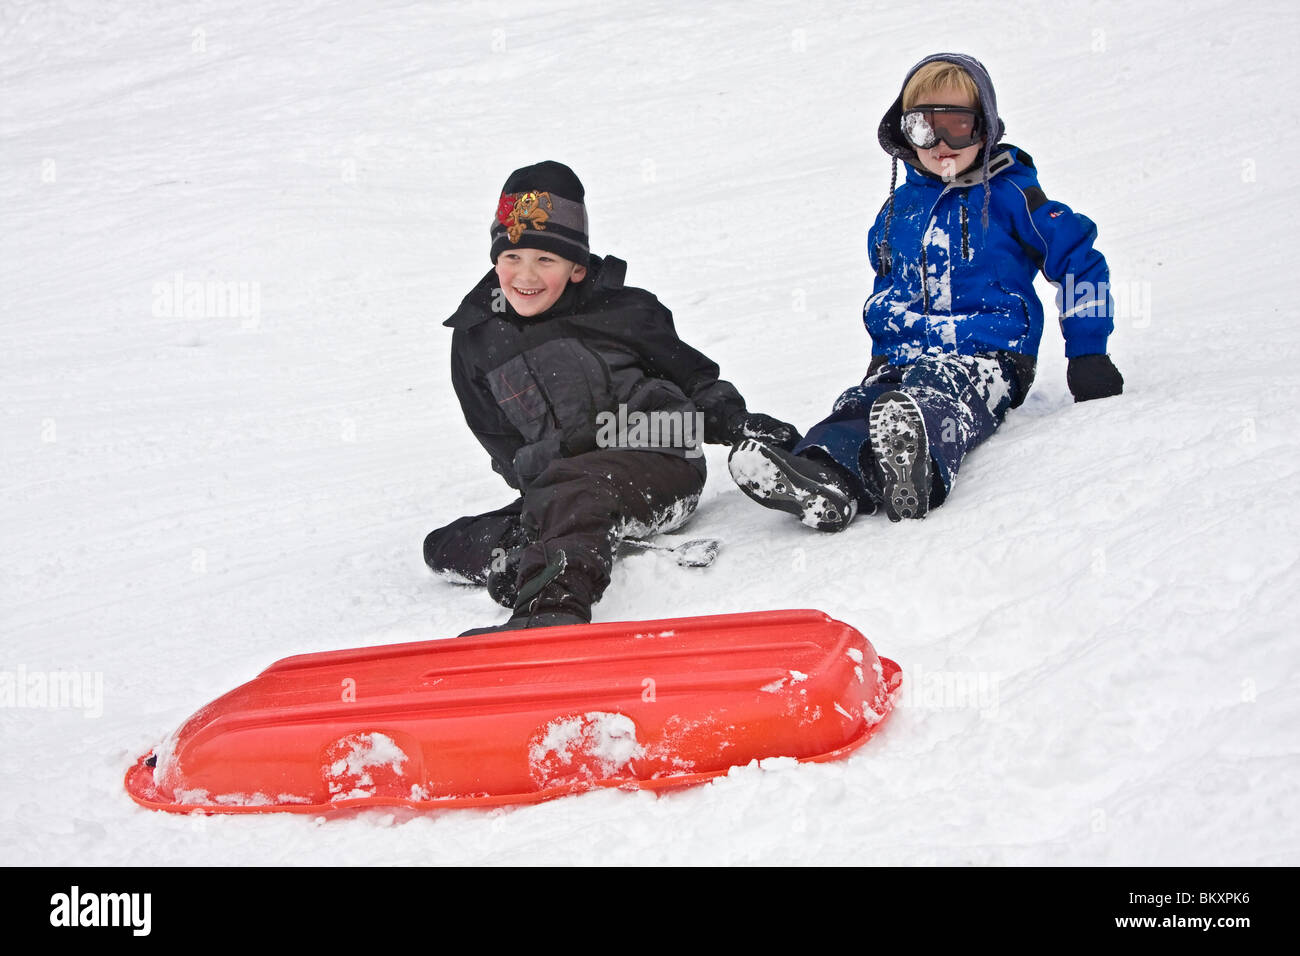 Kinder-Schlitten auf kurze Piste im Winter, South Lake Tahoe, Kalifornien, USA. Hier entwirren zwei jungen sich nach einem Absturz. Stockfoto